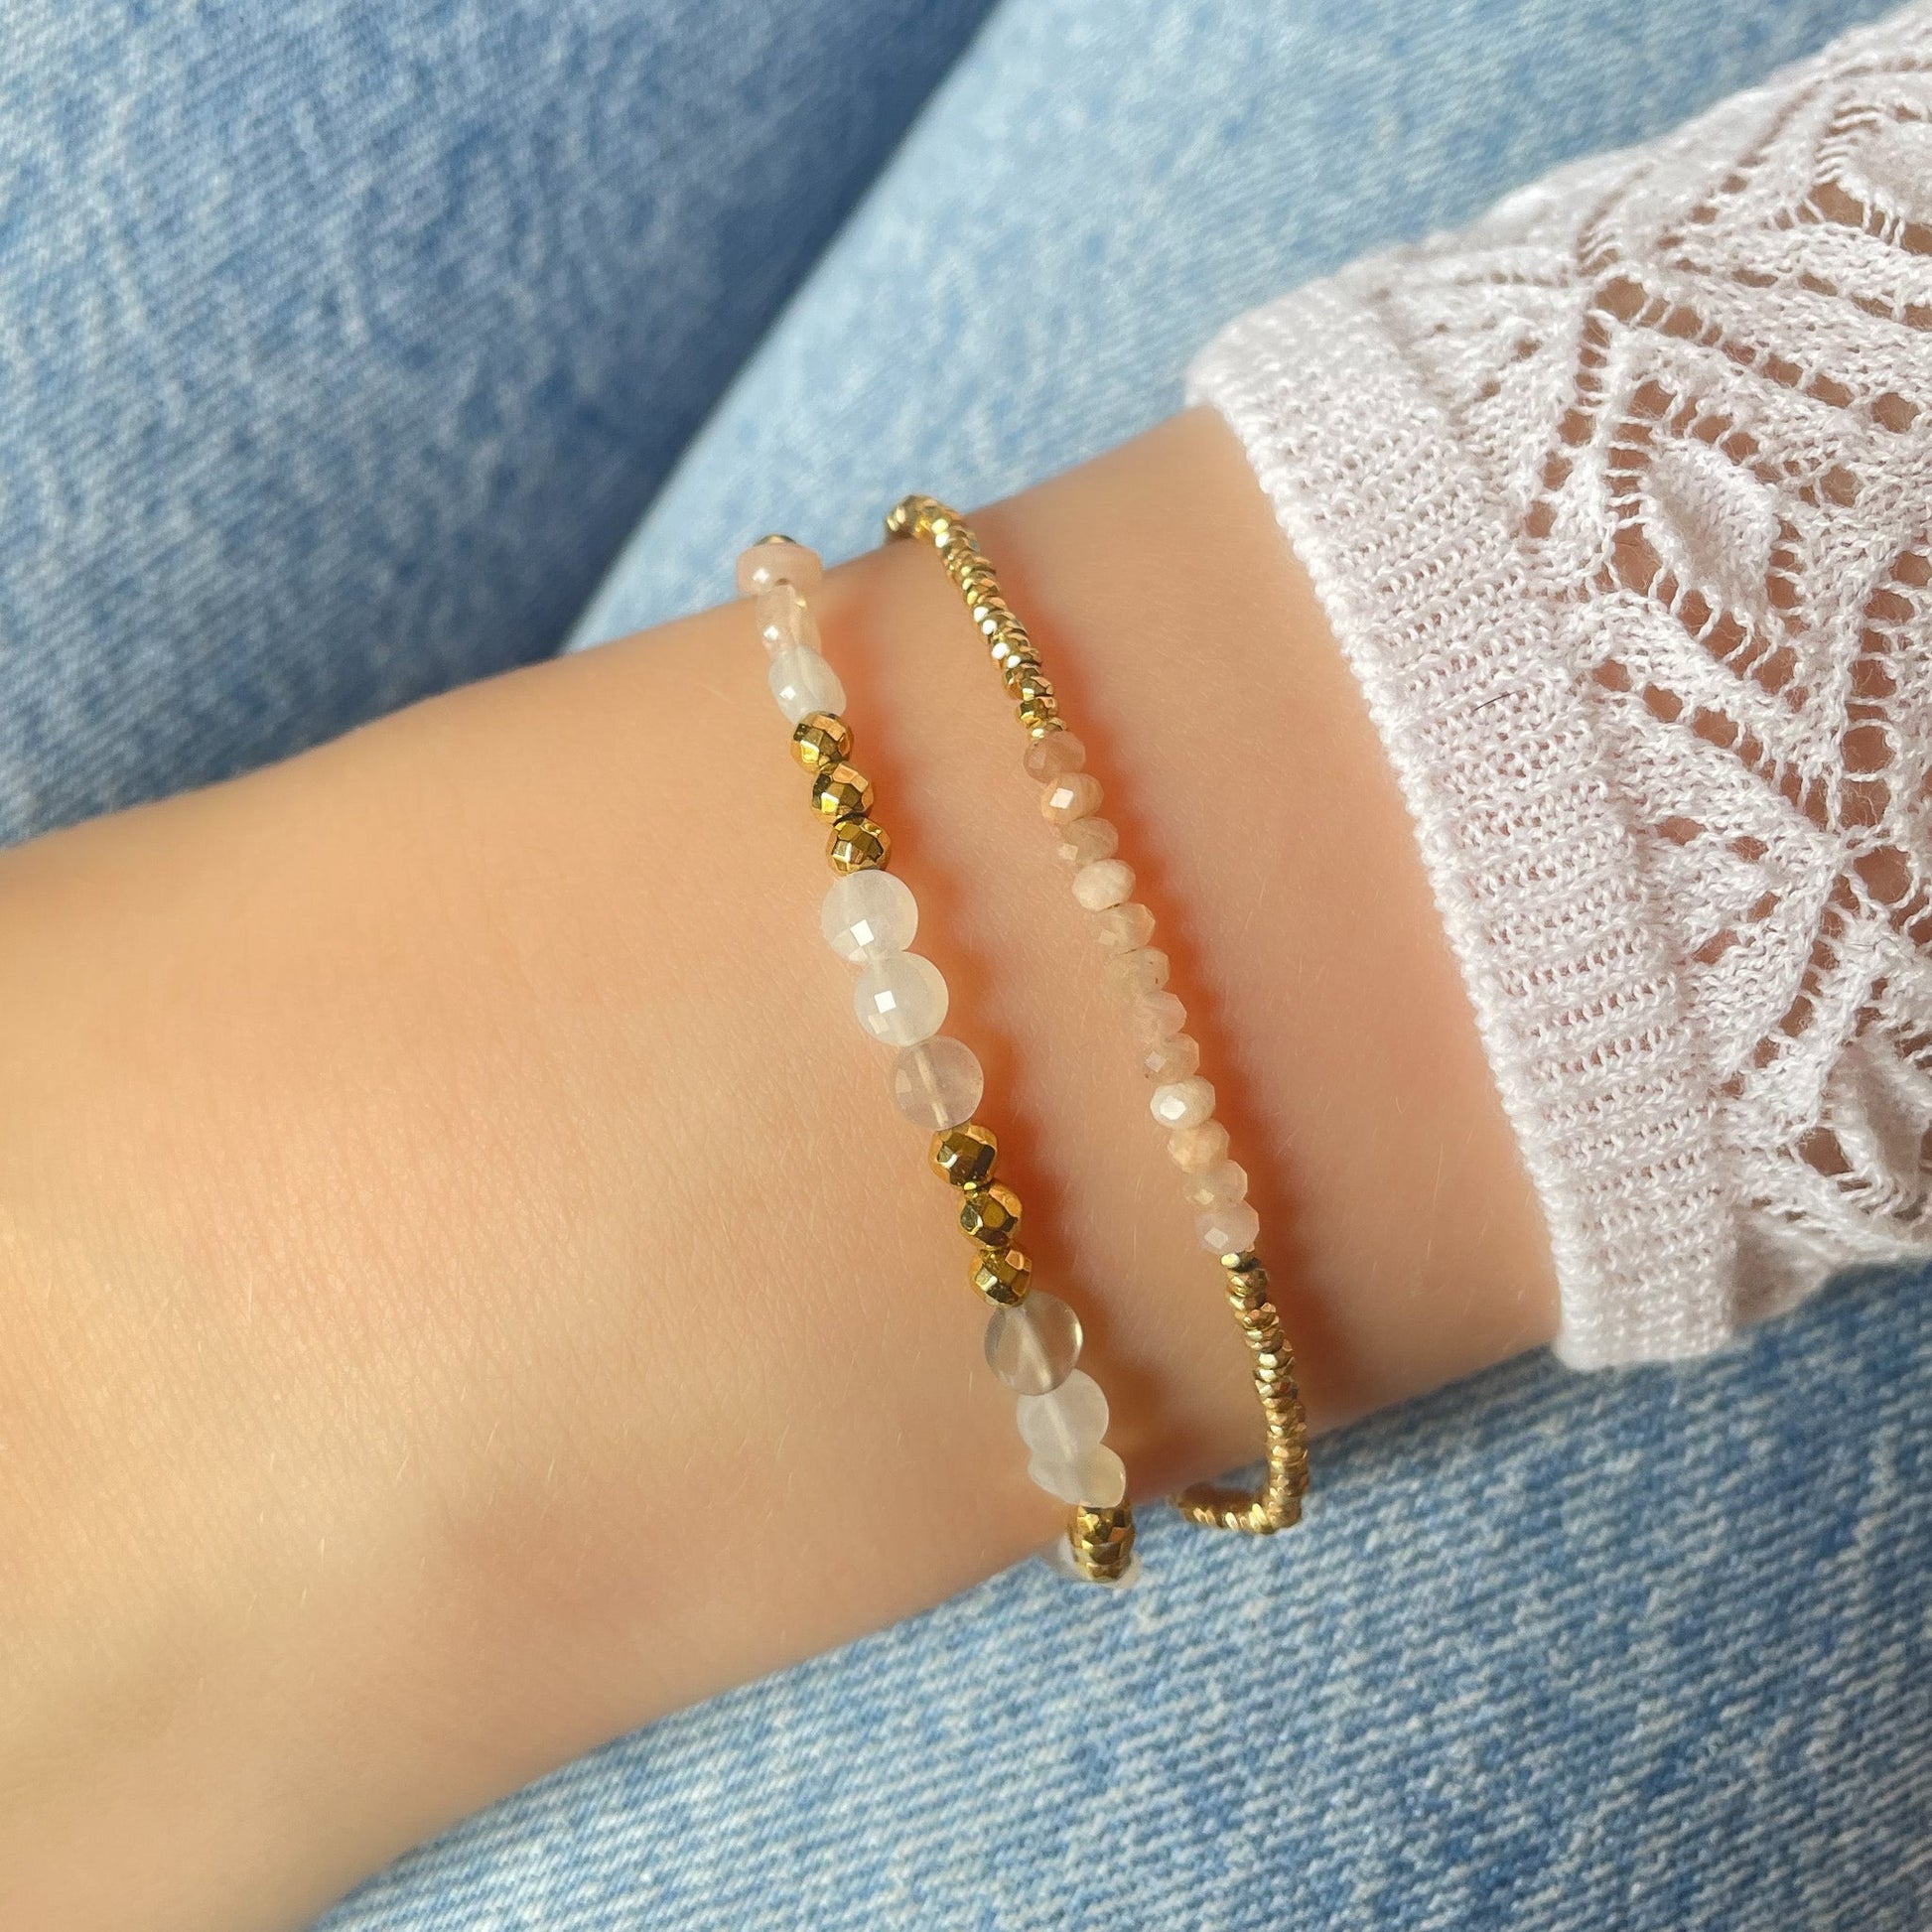 Bracelet ajustable en pierres fines naturelles Pierre de Soleil aux nuances rosées et perles d'hématites dorées.